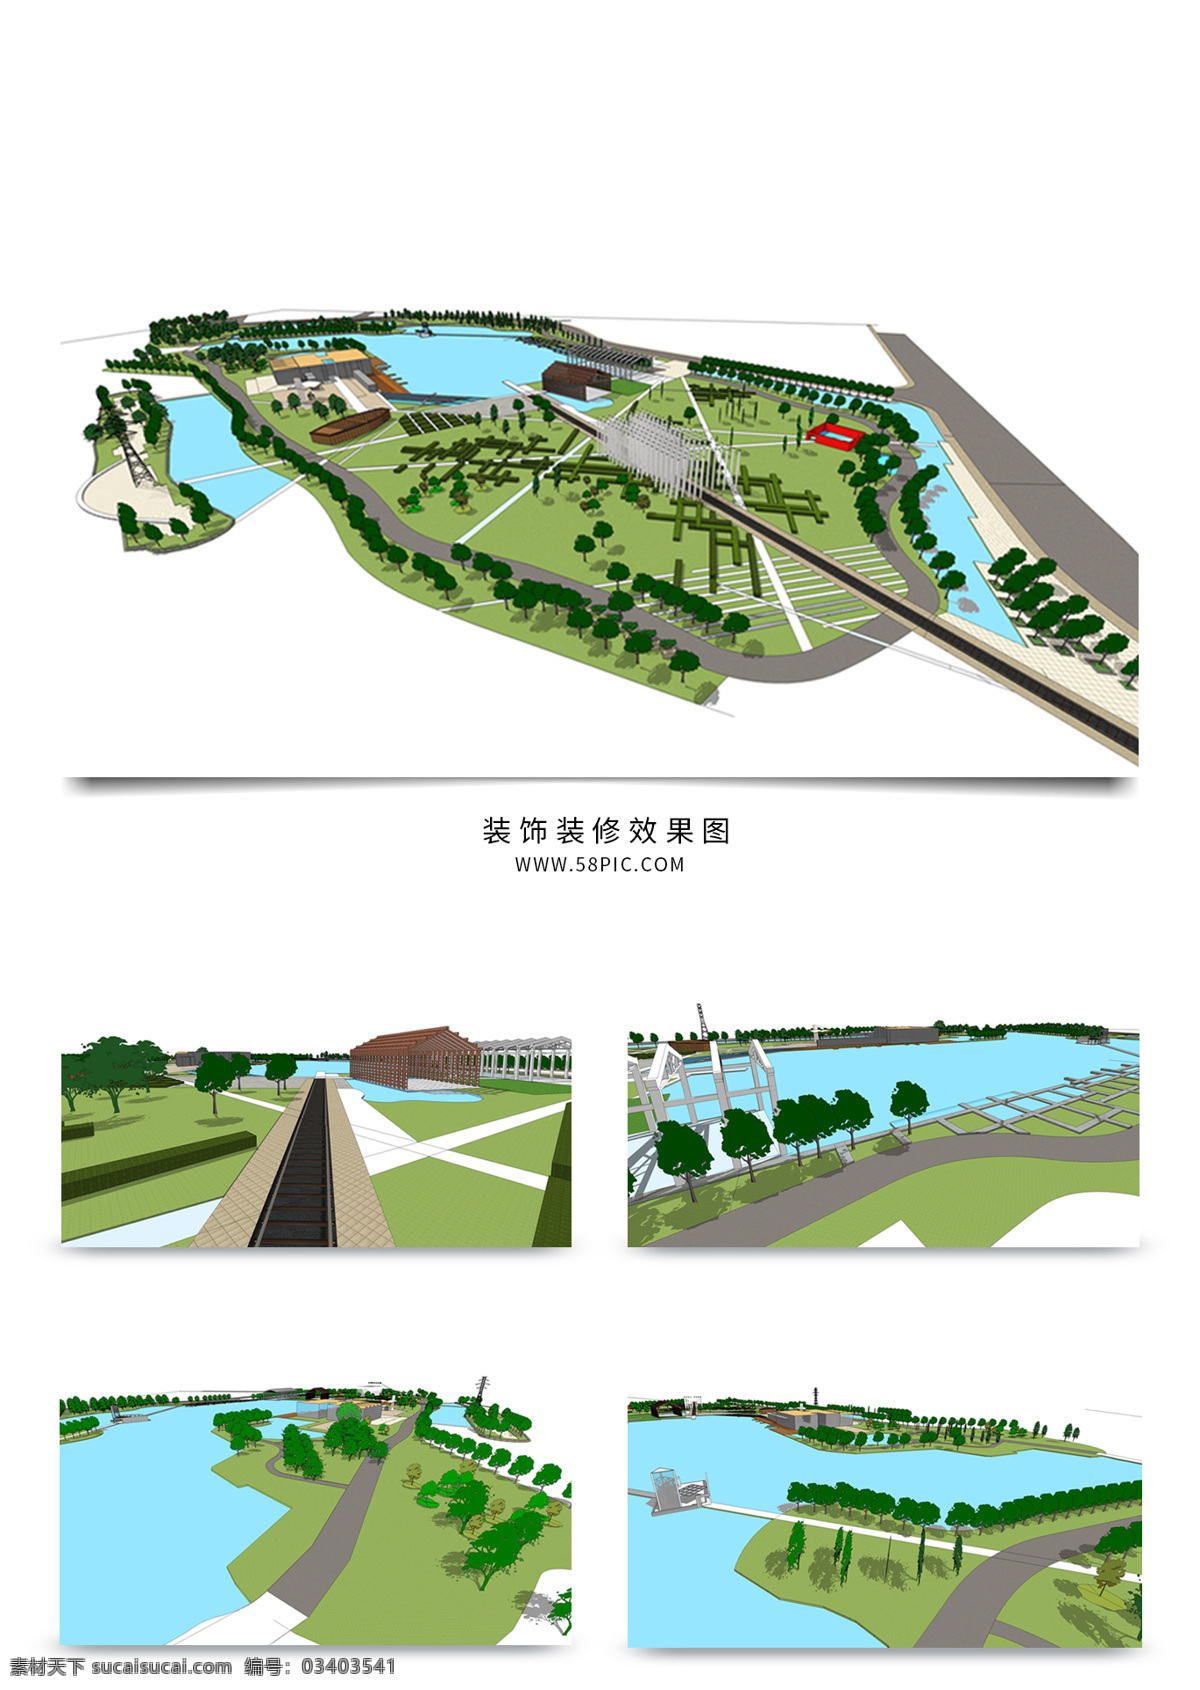 公园 湖泊 景观 规划 su 模型 园林 sketchup 草图 大师 景观规划 建筑装饰 设计素材 景观规划设计 公园景观规划 方案